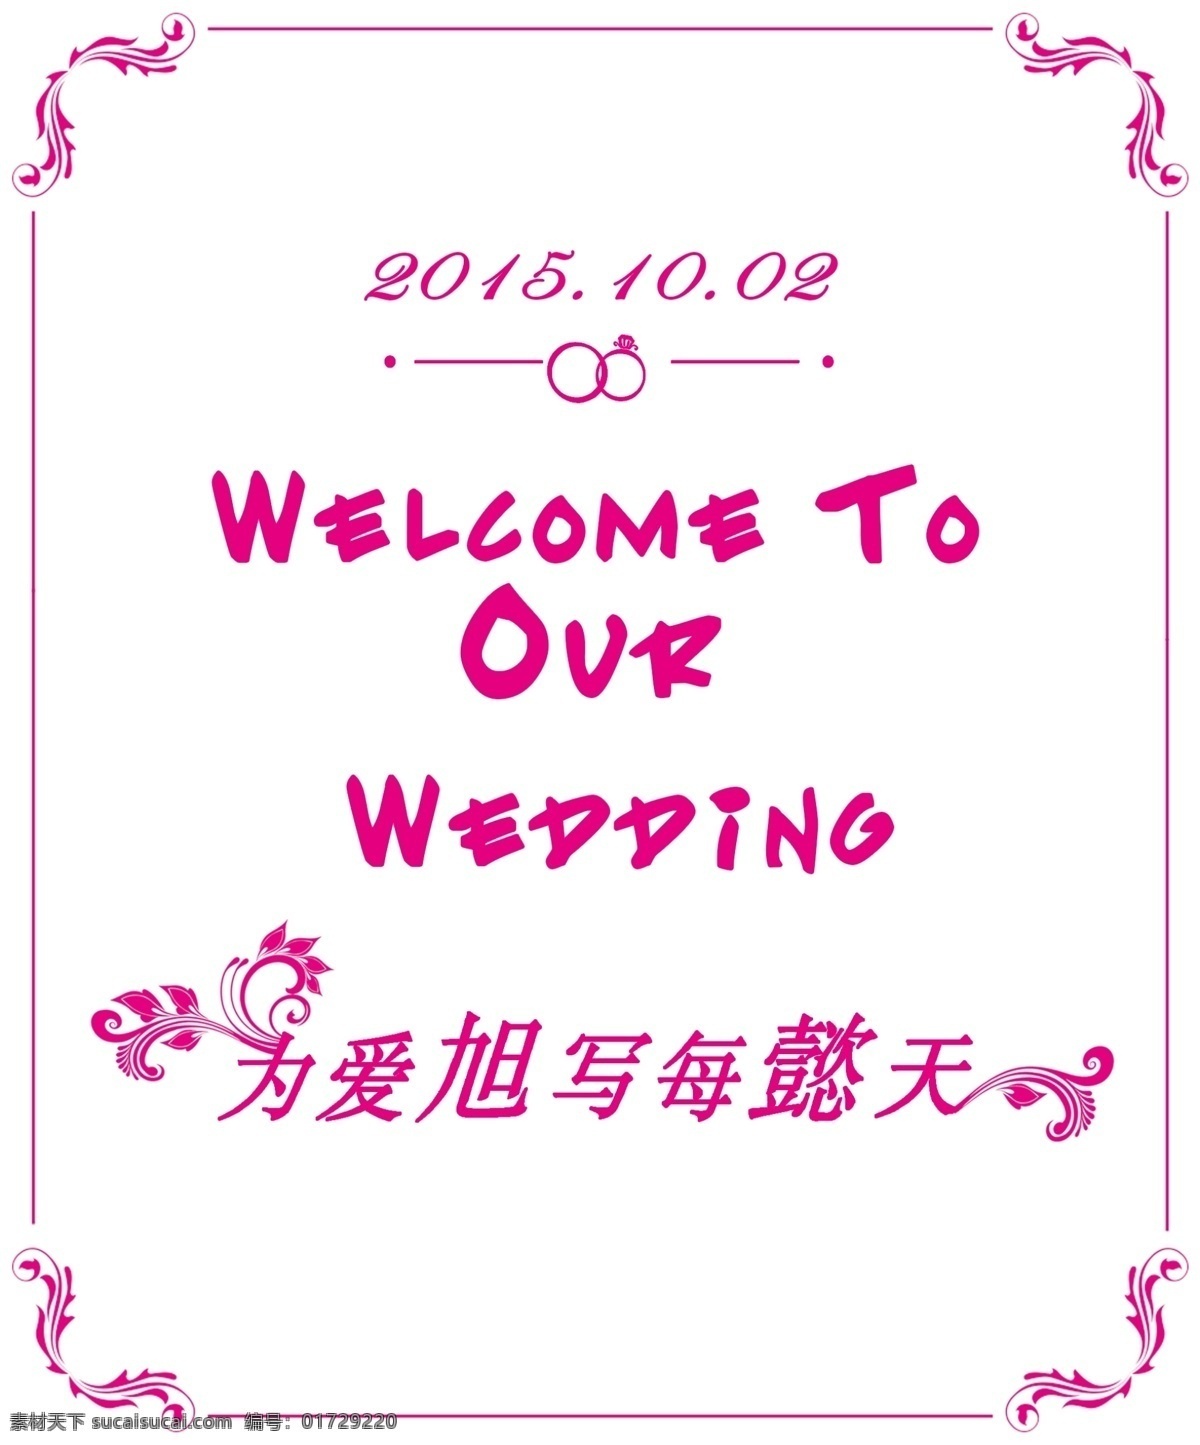 婚礼引导牌 婚礼 结婚 引导牌 粉色边框 白色